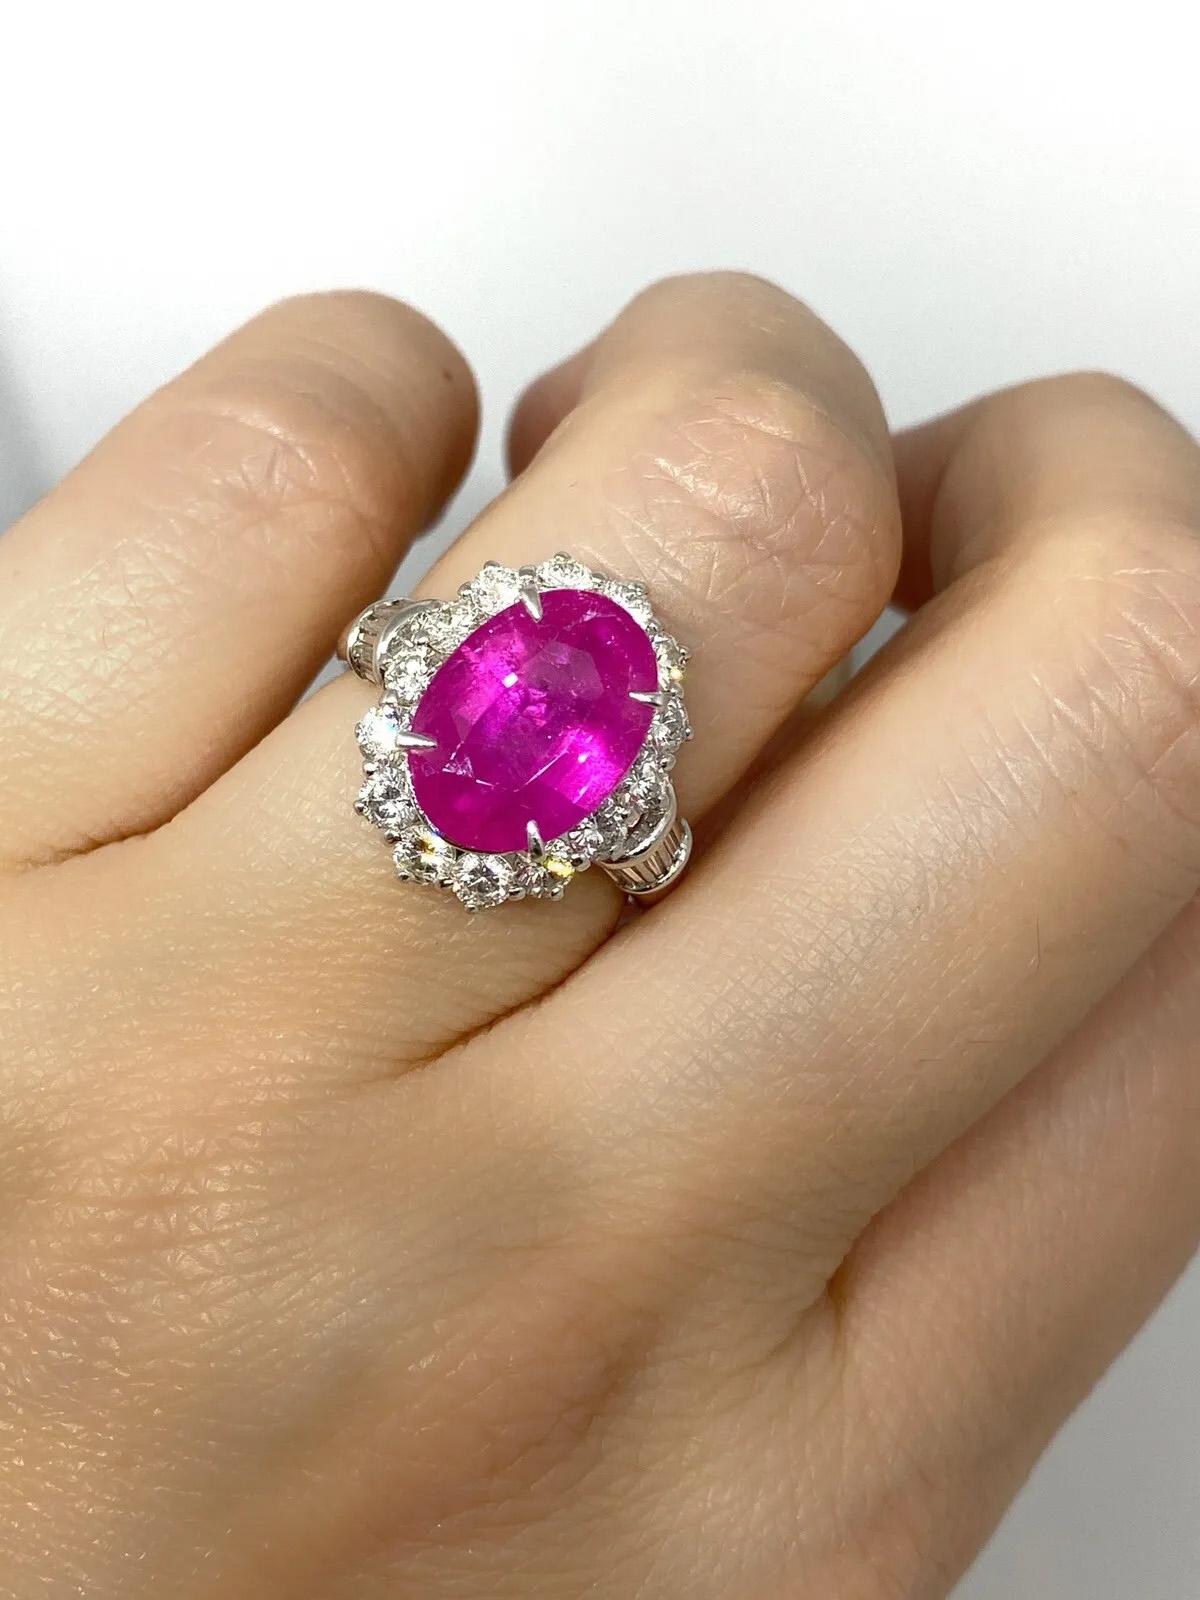 GIA Burma Heated Ruby 4,74 Karat Oval in Diamant Platin Ring

Rubin- und Diamantring mit einem großen ovalen purpurroten Rubin, umgeben von 14 runden Brillanten und 10 Baguette-Diamanten, gefasst in Platin.

Der Rubin stammt aus Burma (Myanmar) und